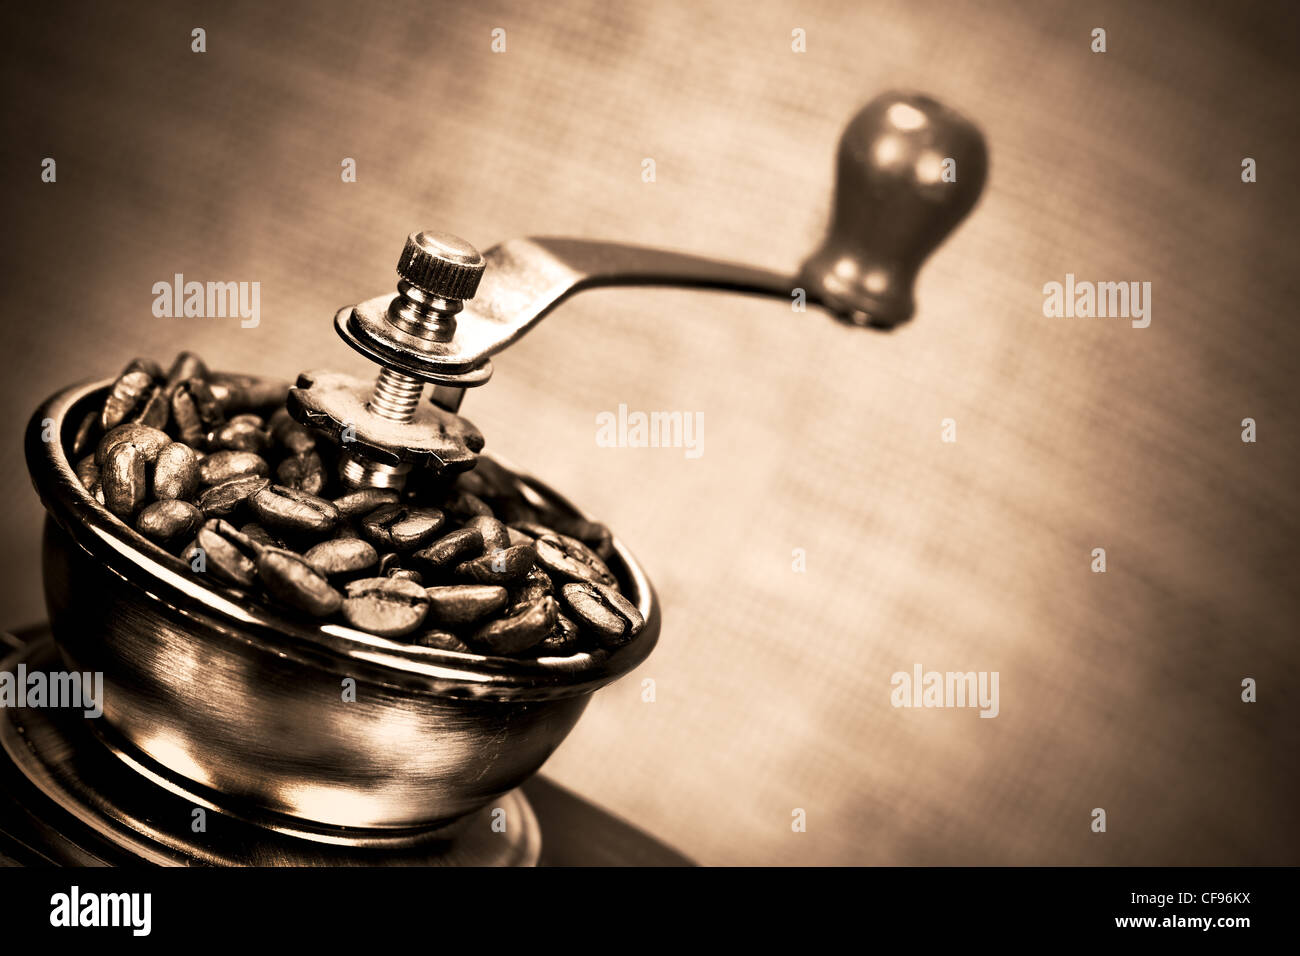 https://c8.alamy.com/compes/cf96kx/contraste-de-imagen-de-vintage-o-esmeriladora-molino-de-cafe-con-granos-de-cafe-en-color-sepia-cf96kx.jpg